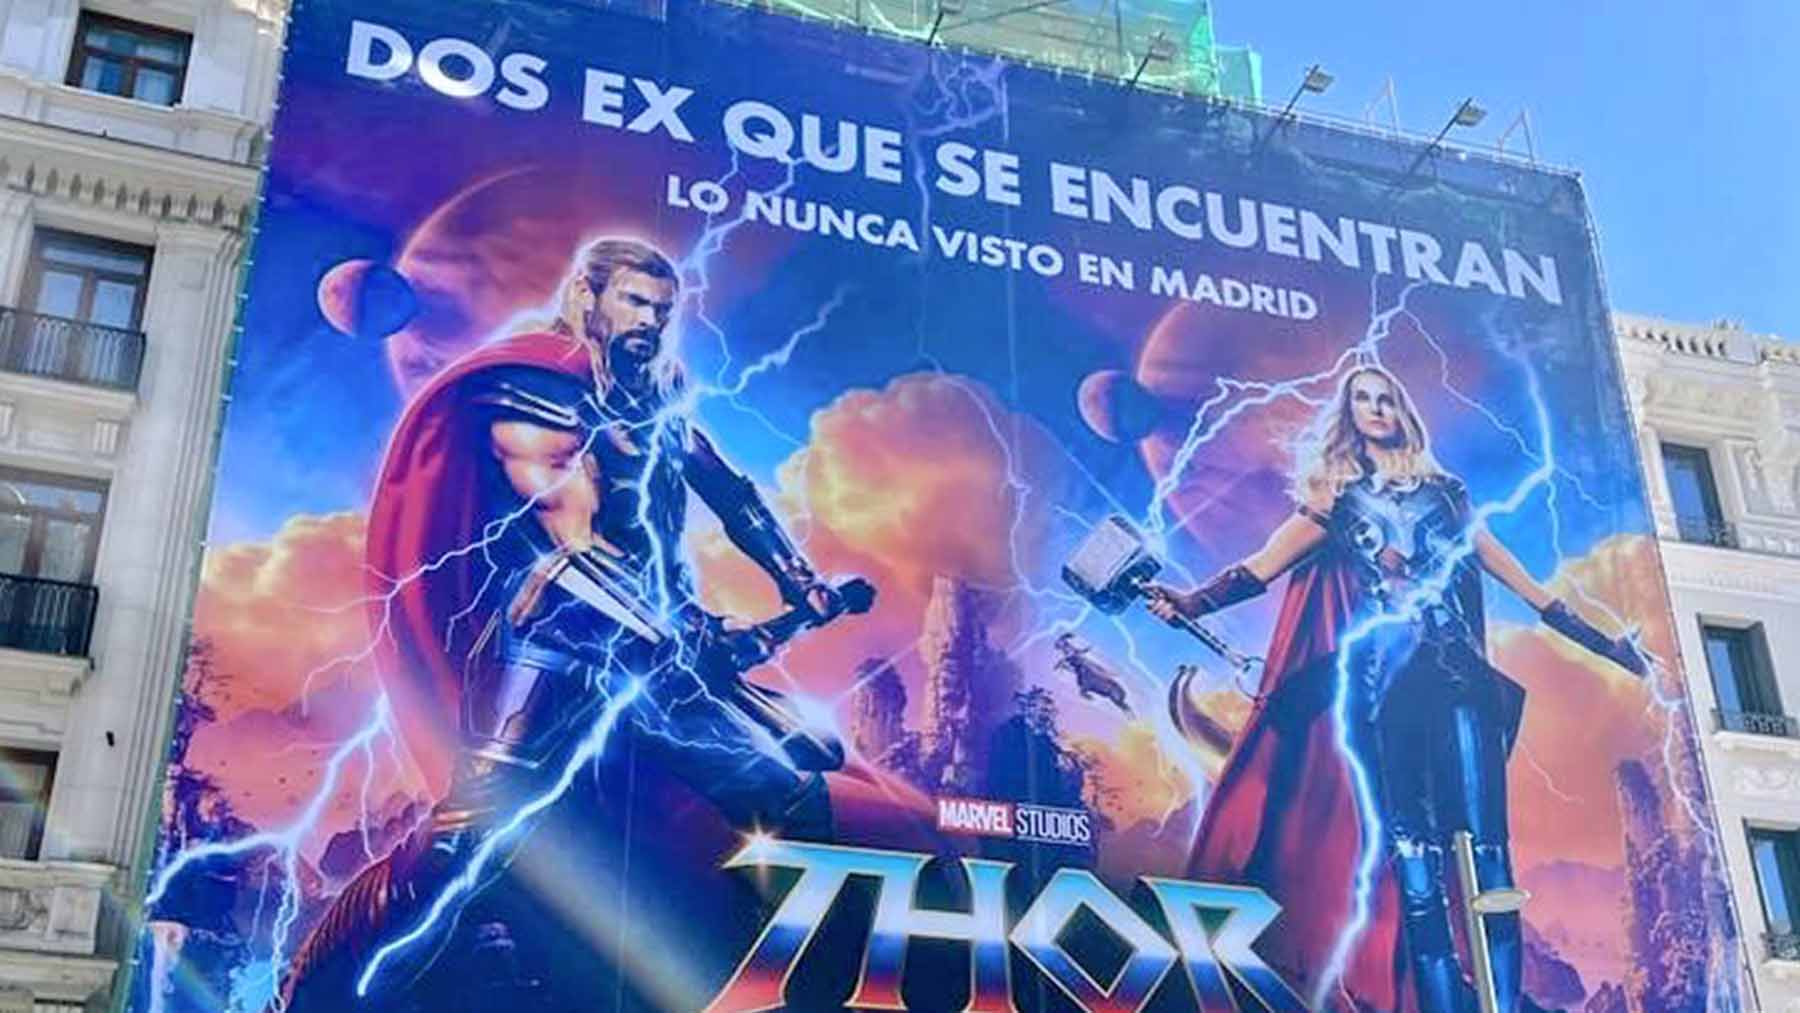 Marvel parafrasea a Ayuso para su nueva película: «Dos ex que se encuentran; lo nunca visto en Madrid»